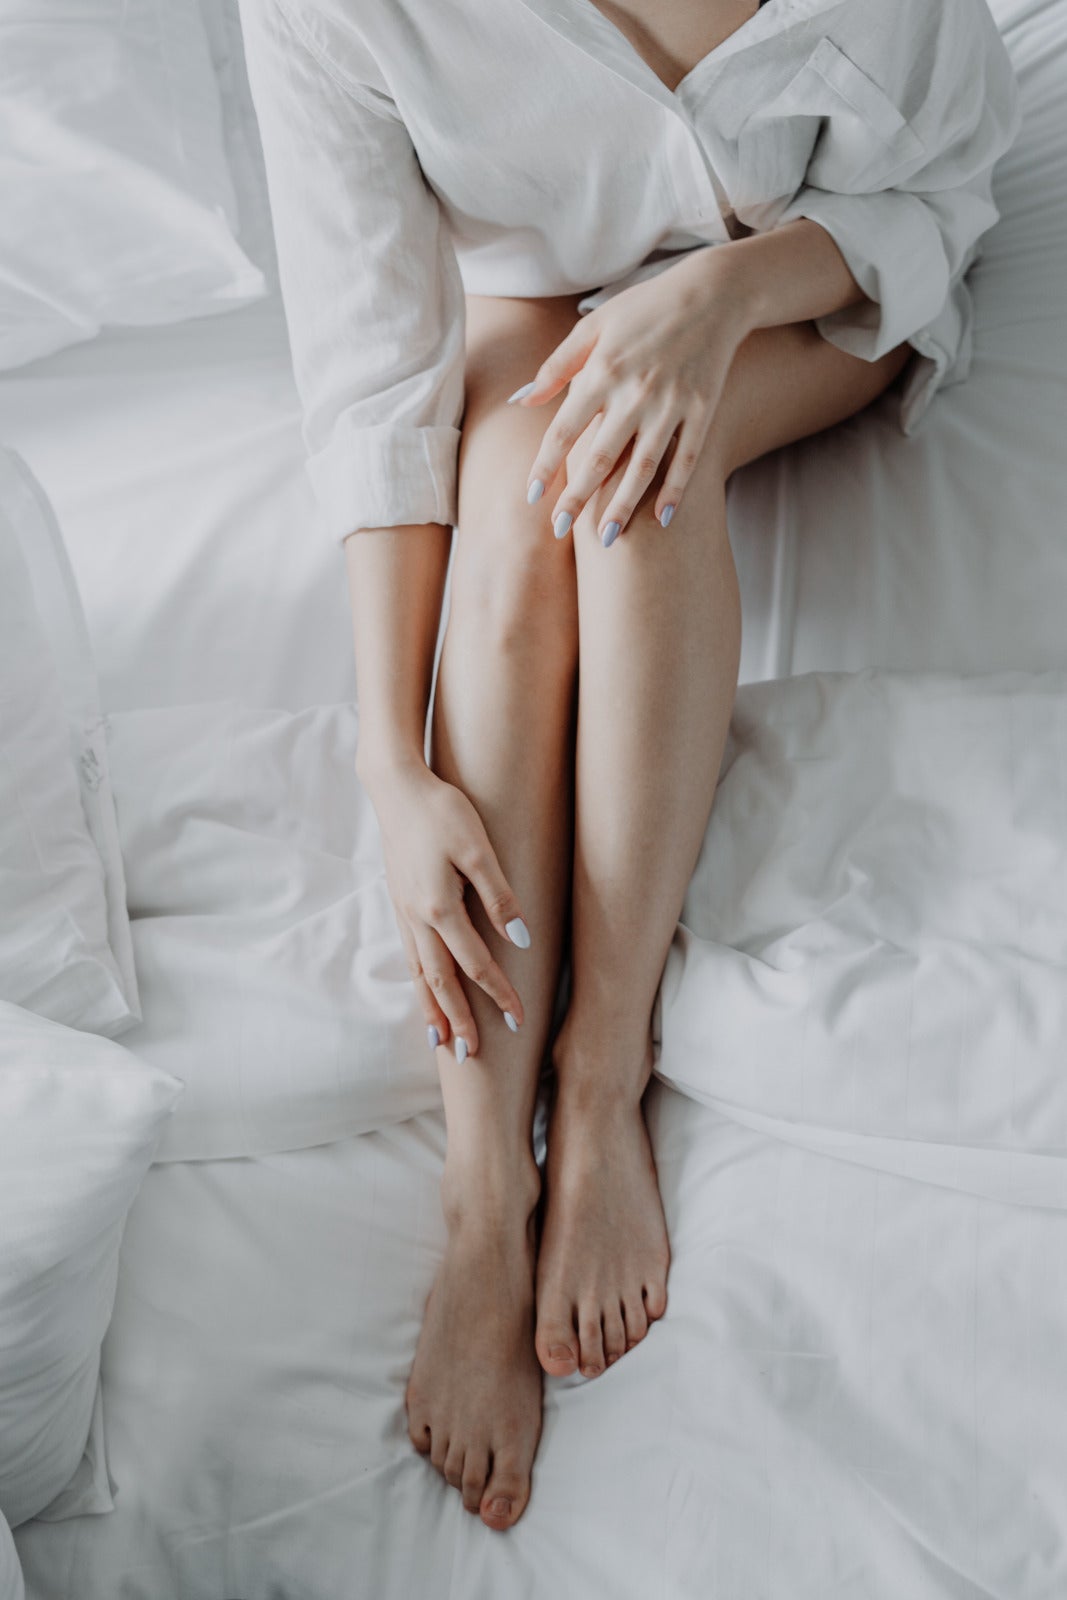 Pexels Cottonbro Studio Woman Leg Bath Rob Bed